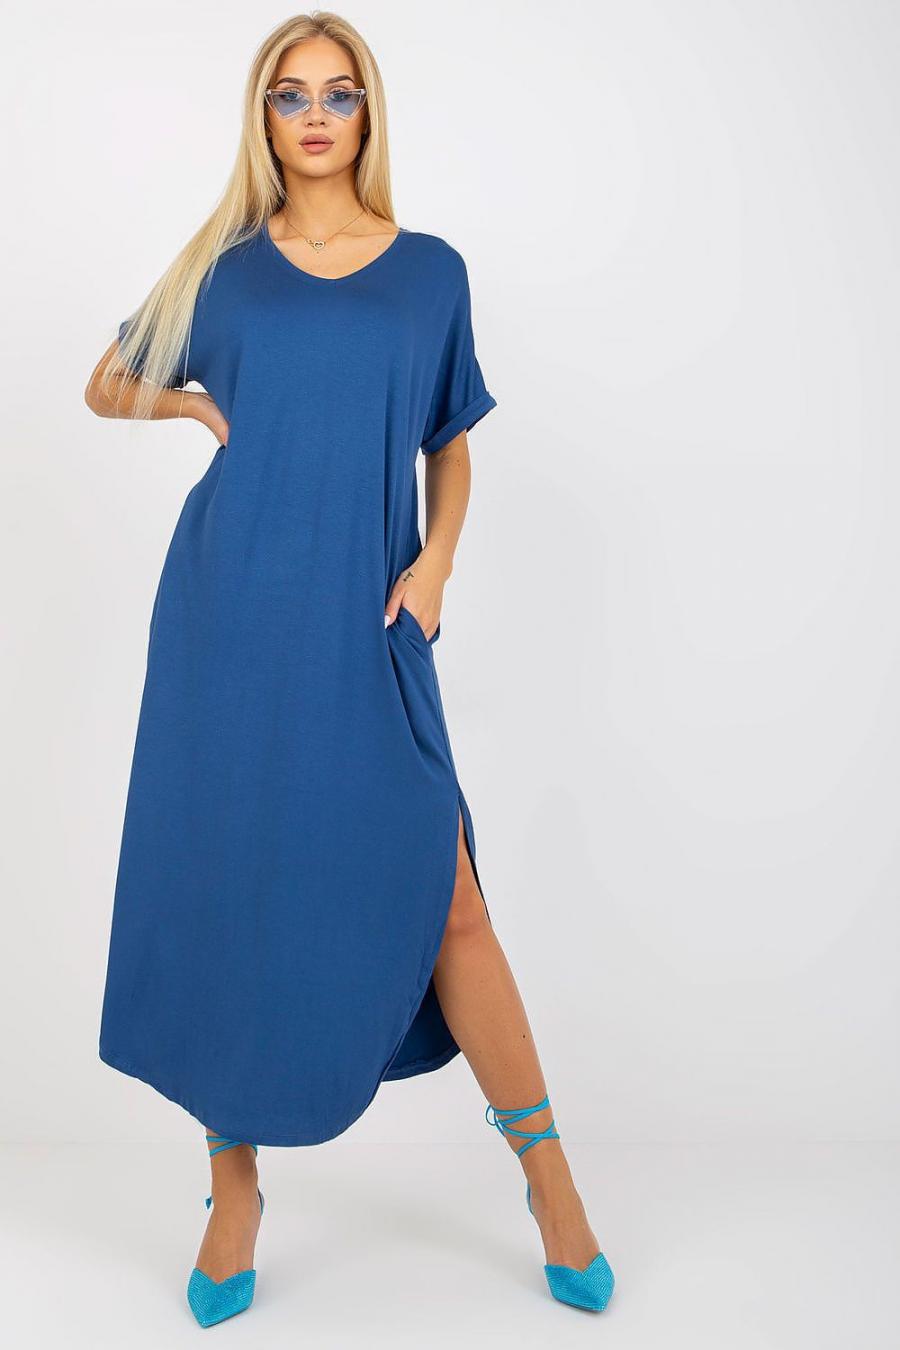 Ostatní značky šaty dámské 167099 - Tmavě modrá - velikost M